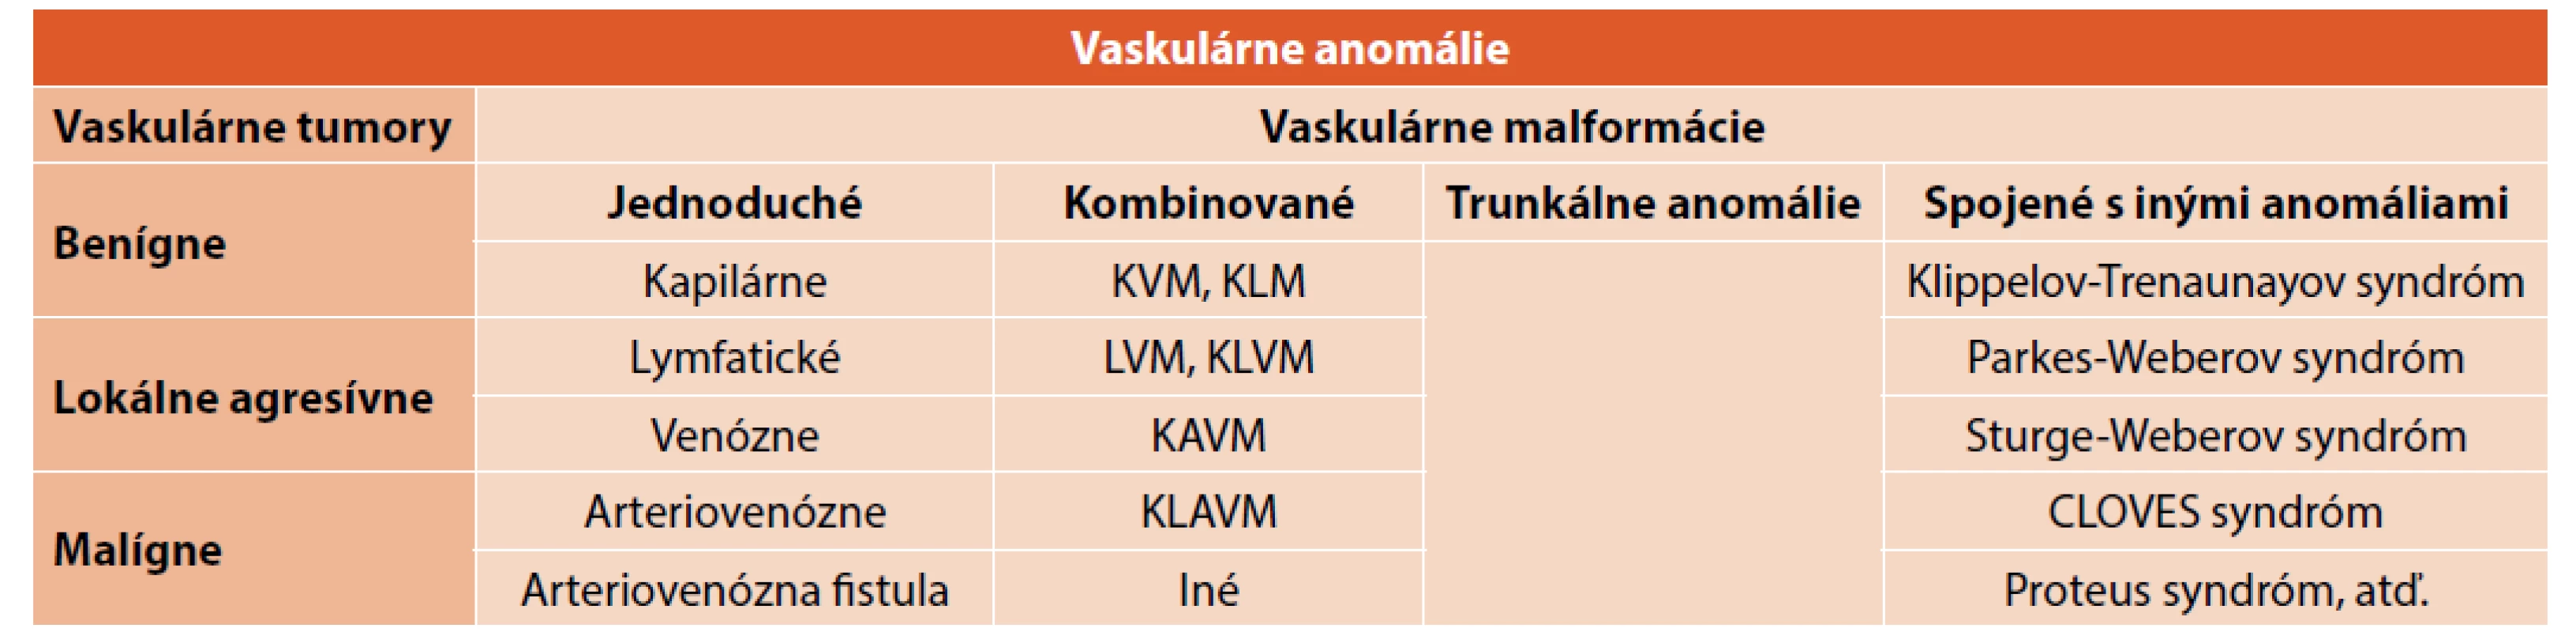 ISSVA klasifikácia vaskulárnych anomálií z roku 2018 [6].